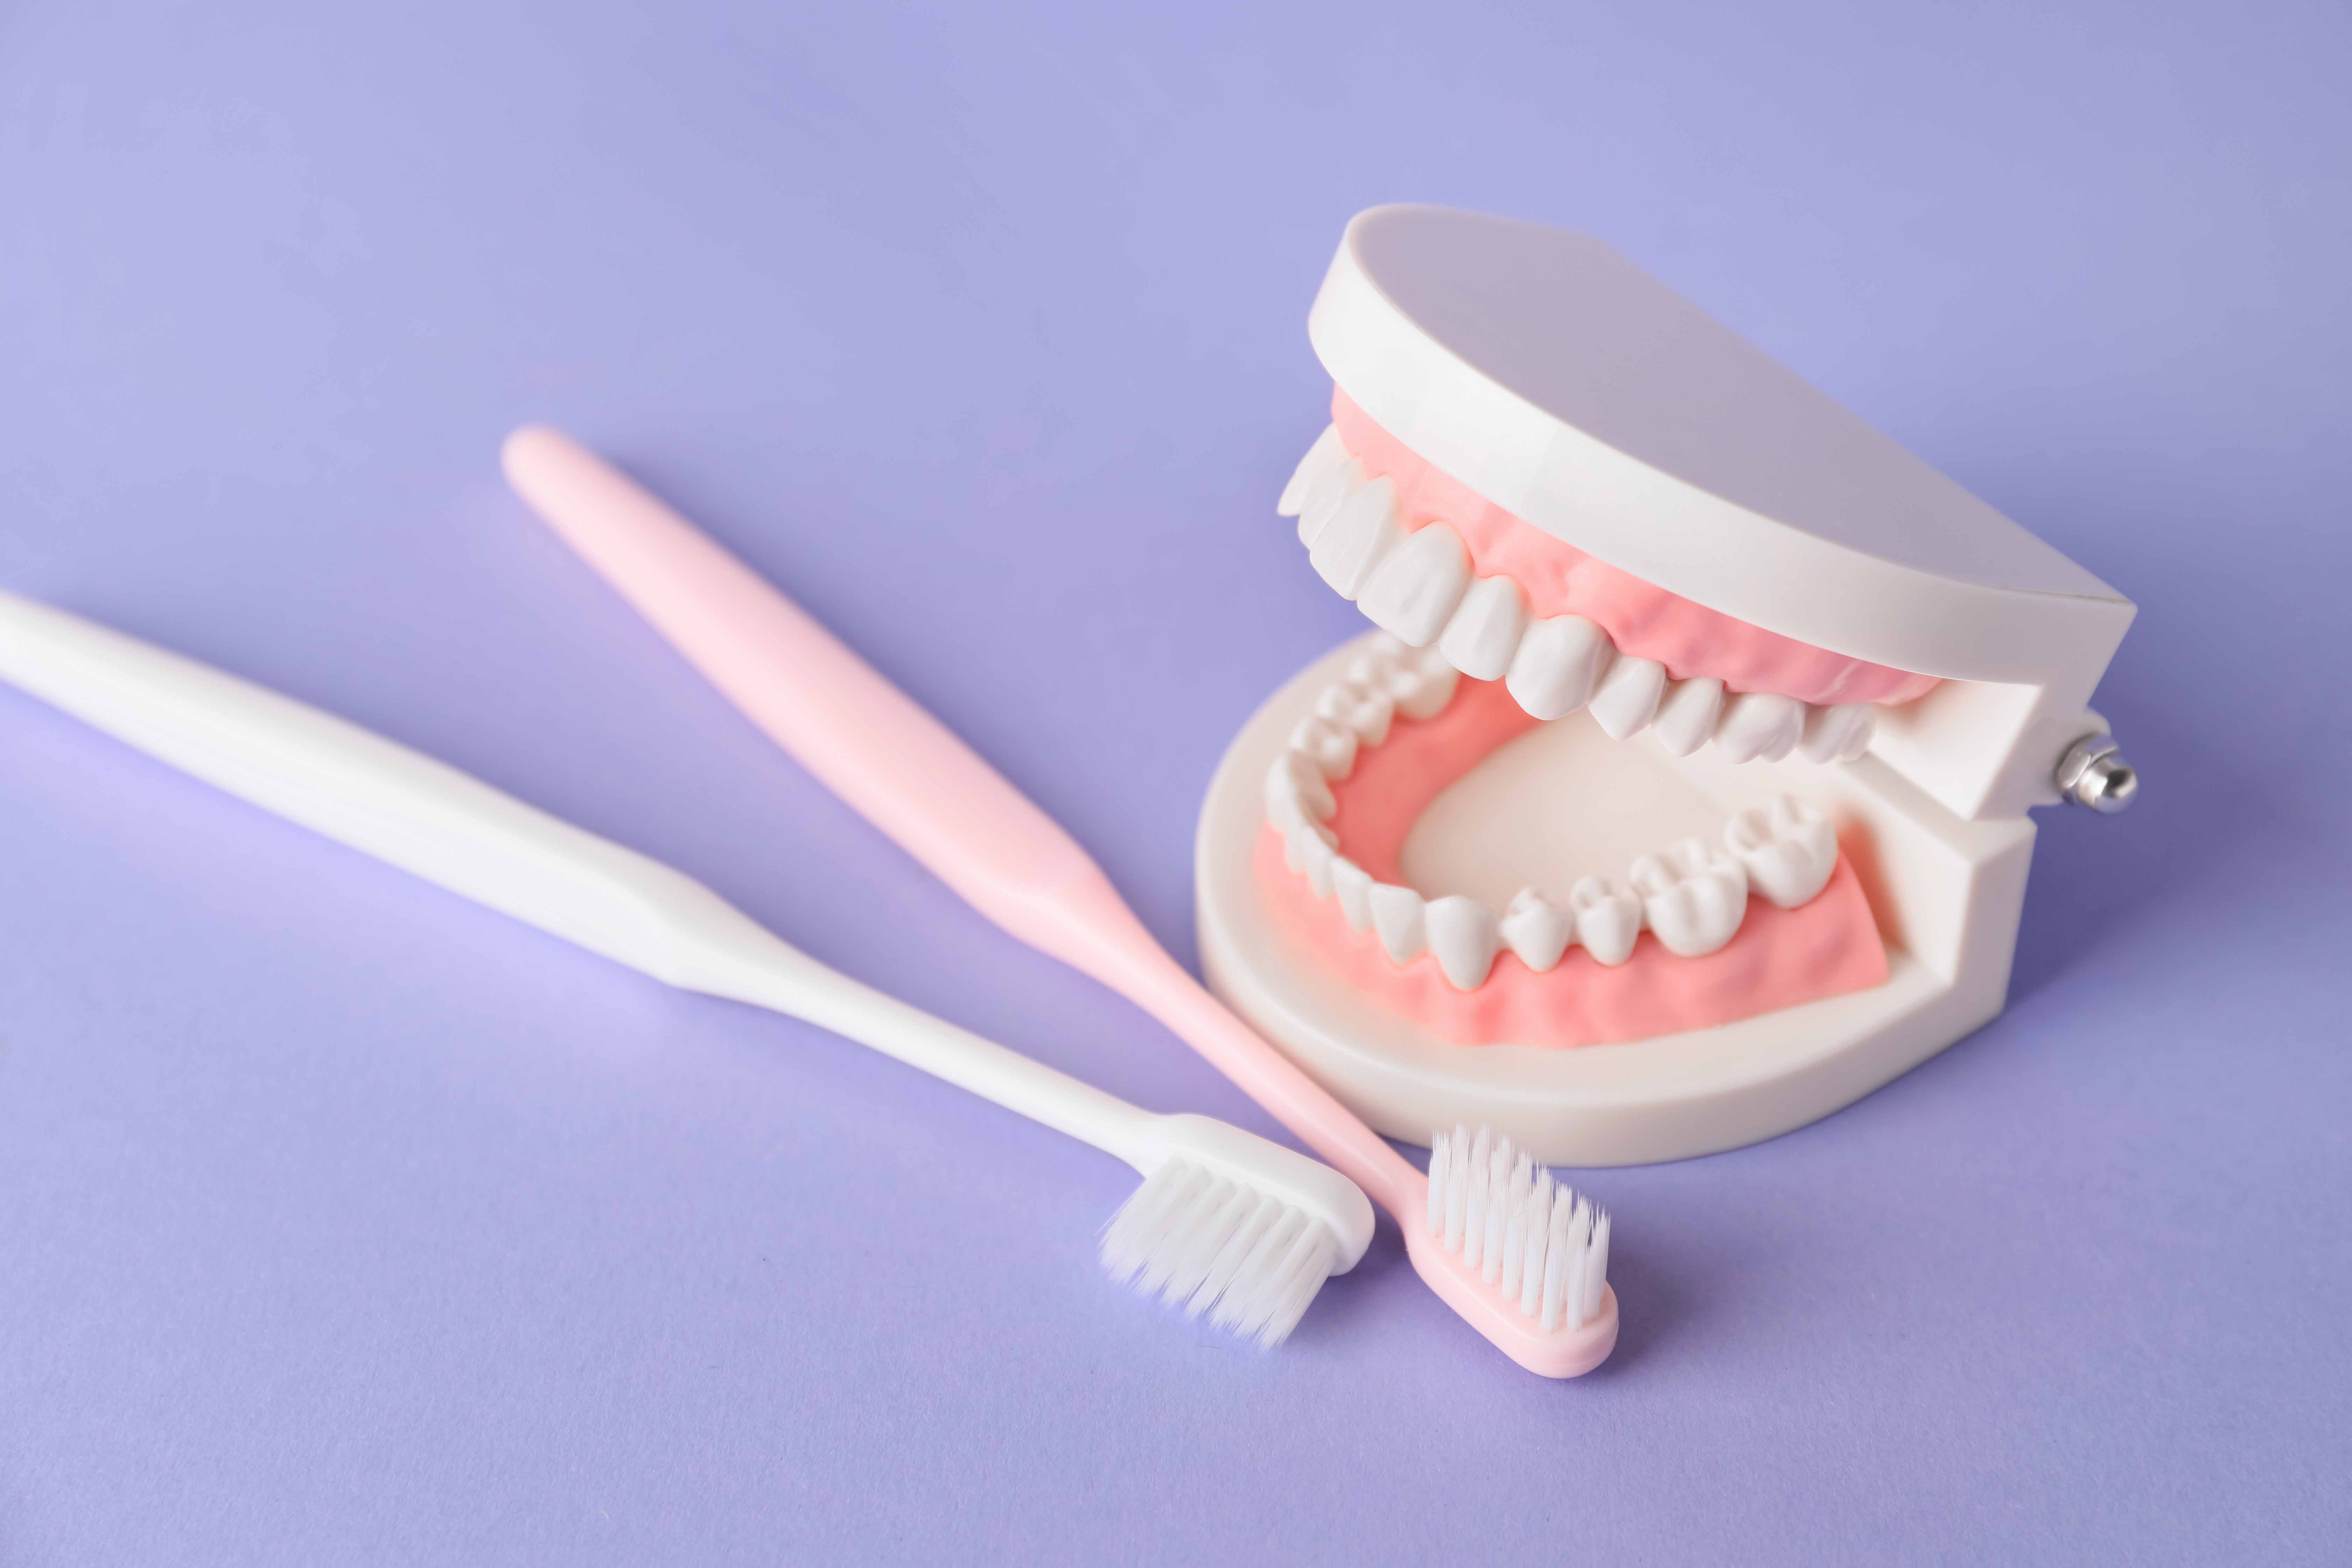 紫のテーブルの上に置かれた歯ブラシと歯の模型